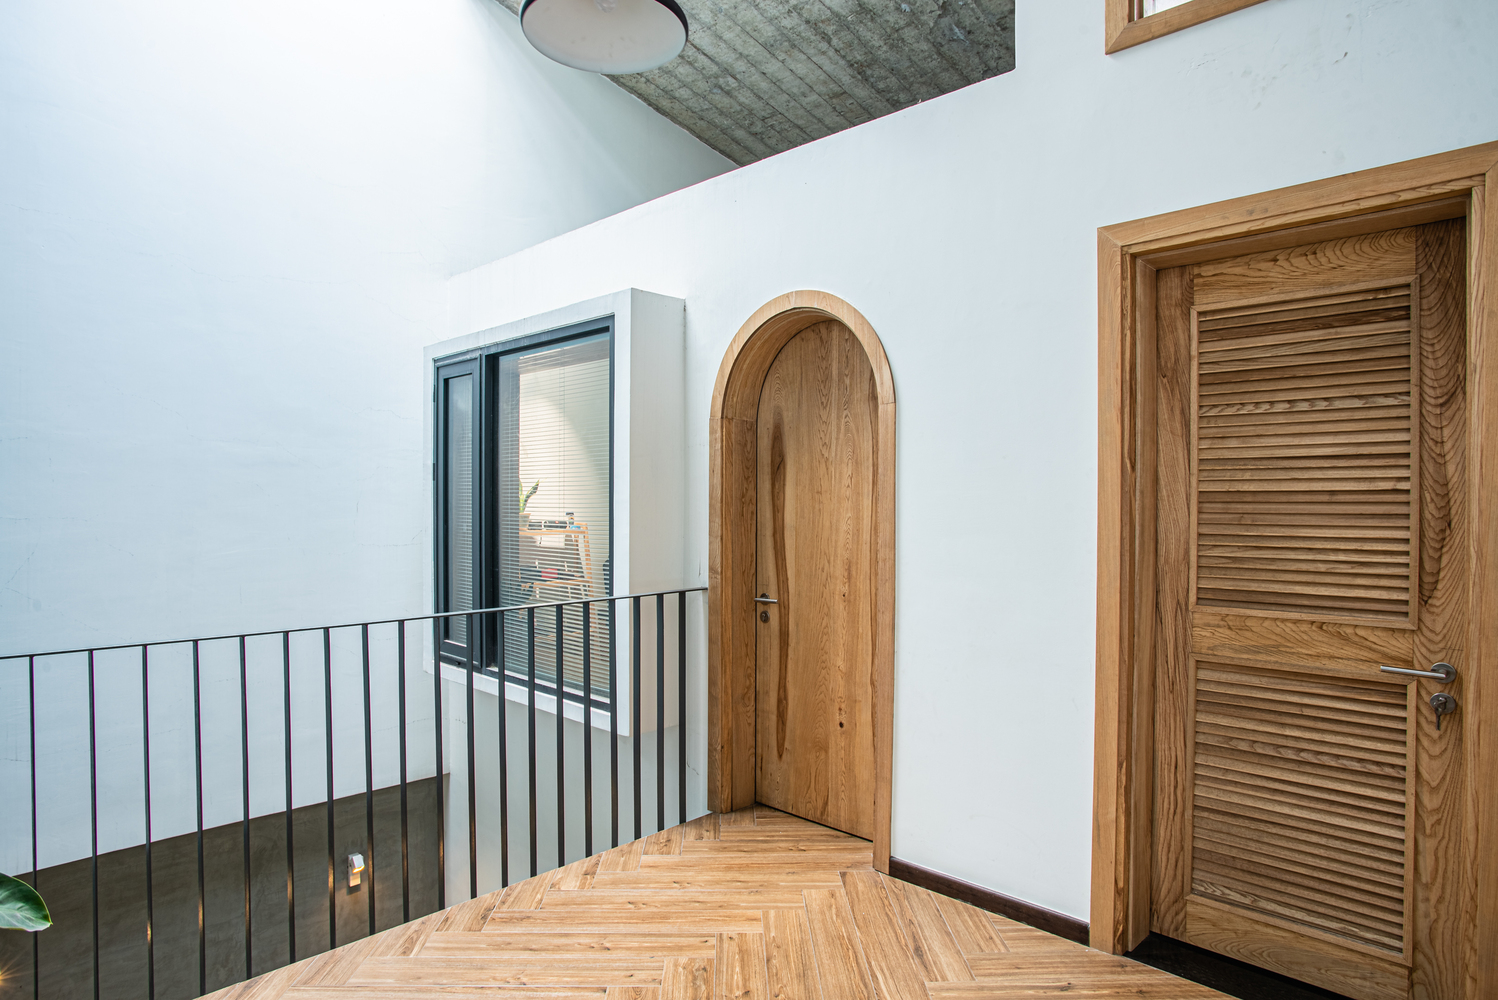 hành lang nhà ống dẫn vào các phòng riêng với cửa gỗ tự nhiên, cửa vòm mềm mại